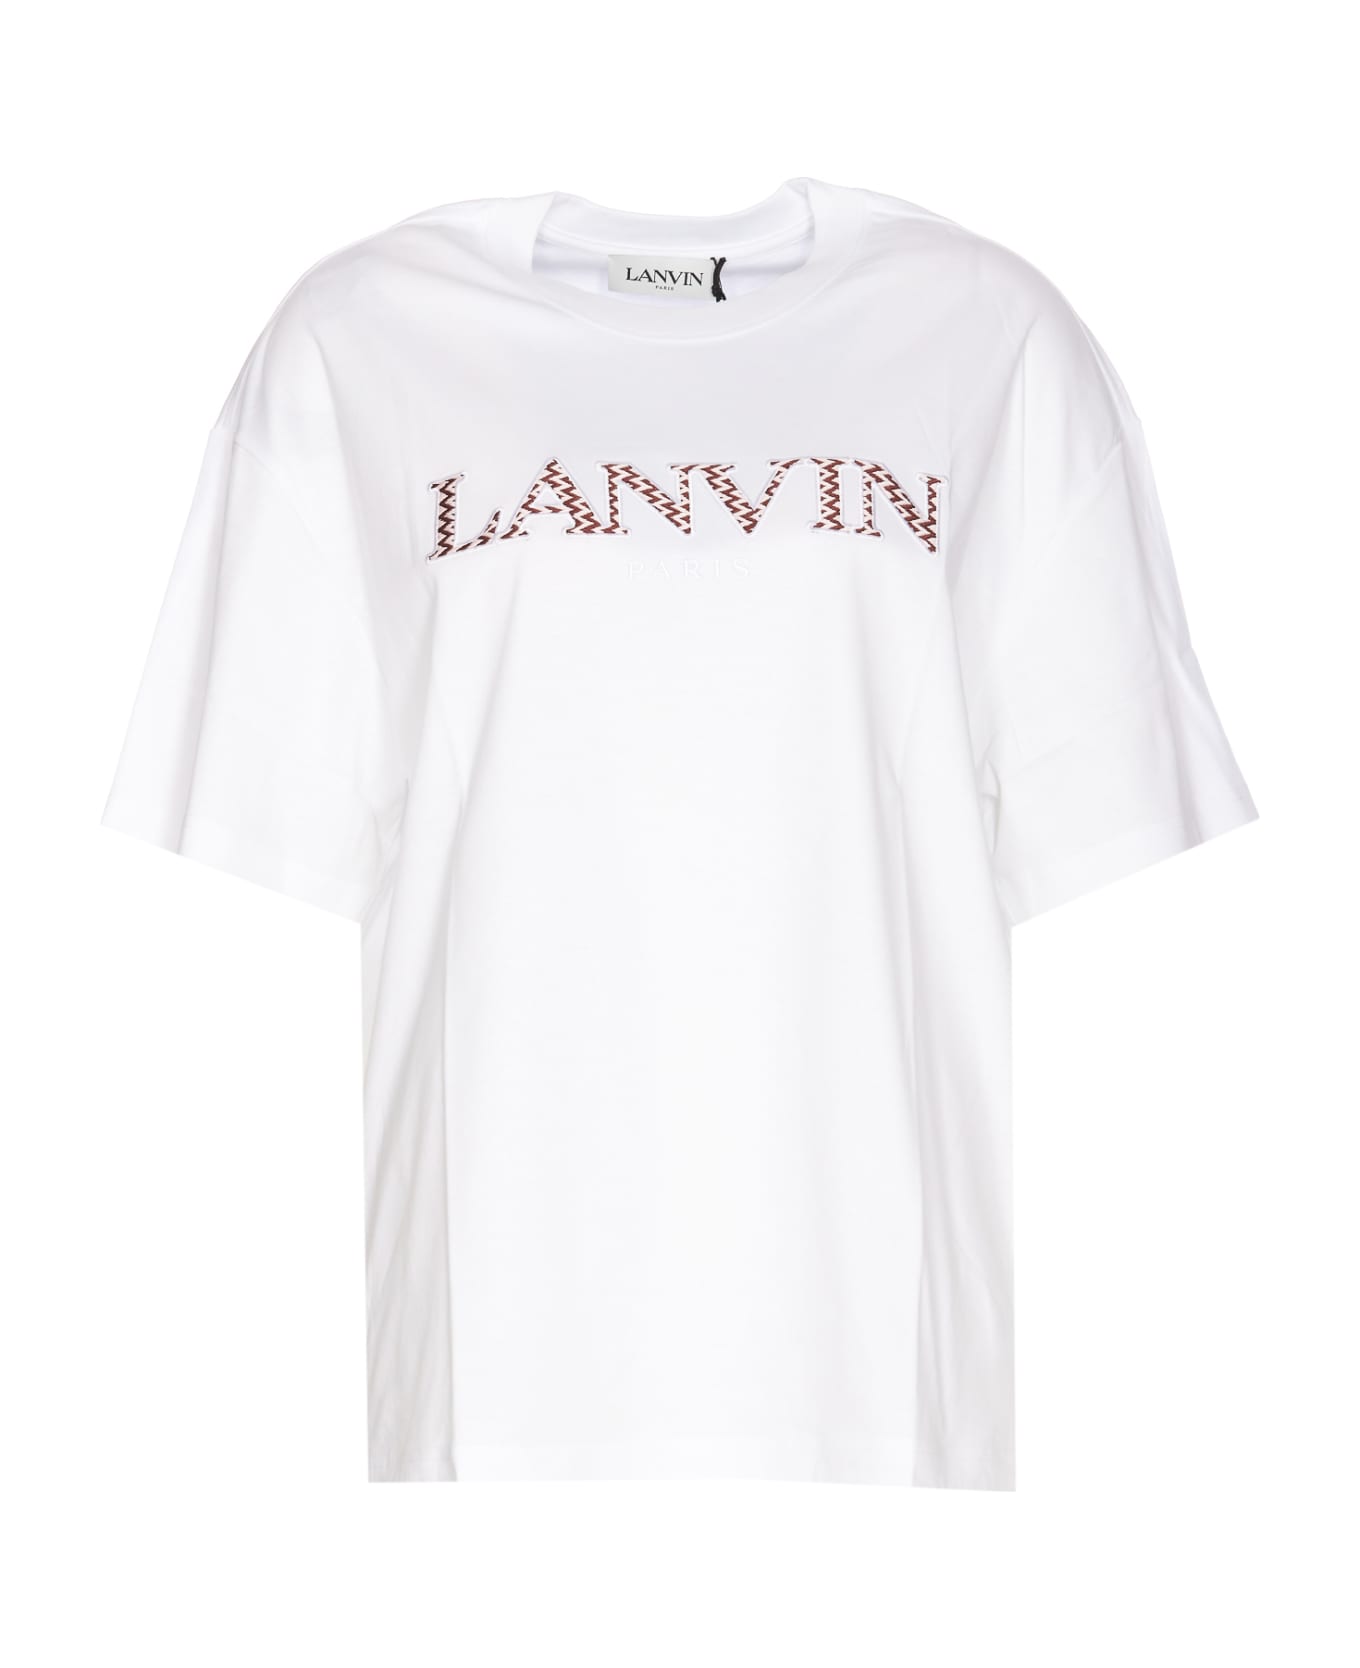 Lanvin Curb T-shirt - White